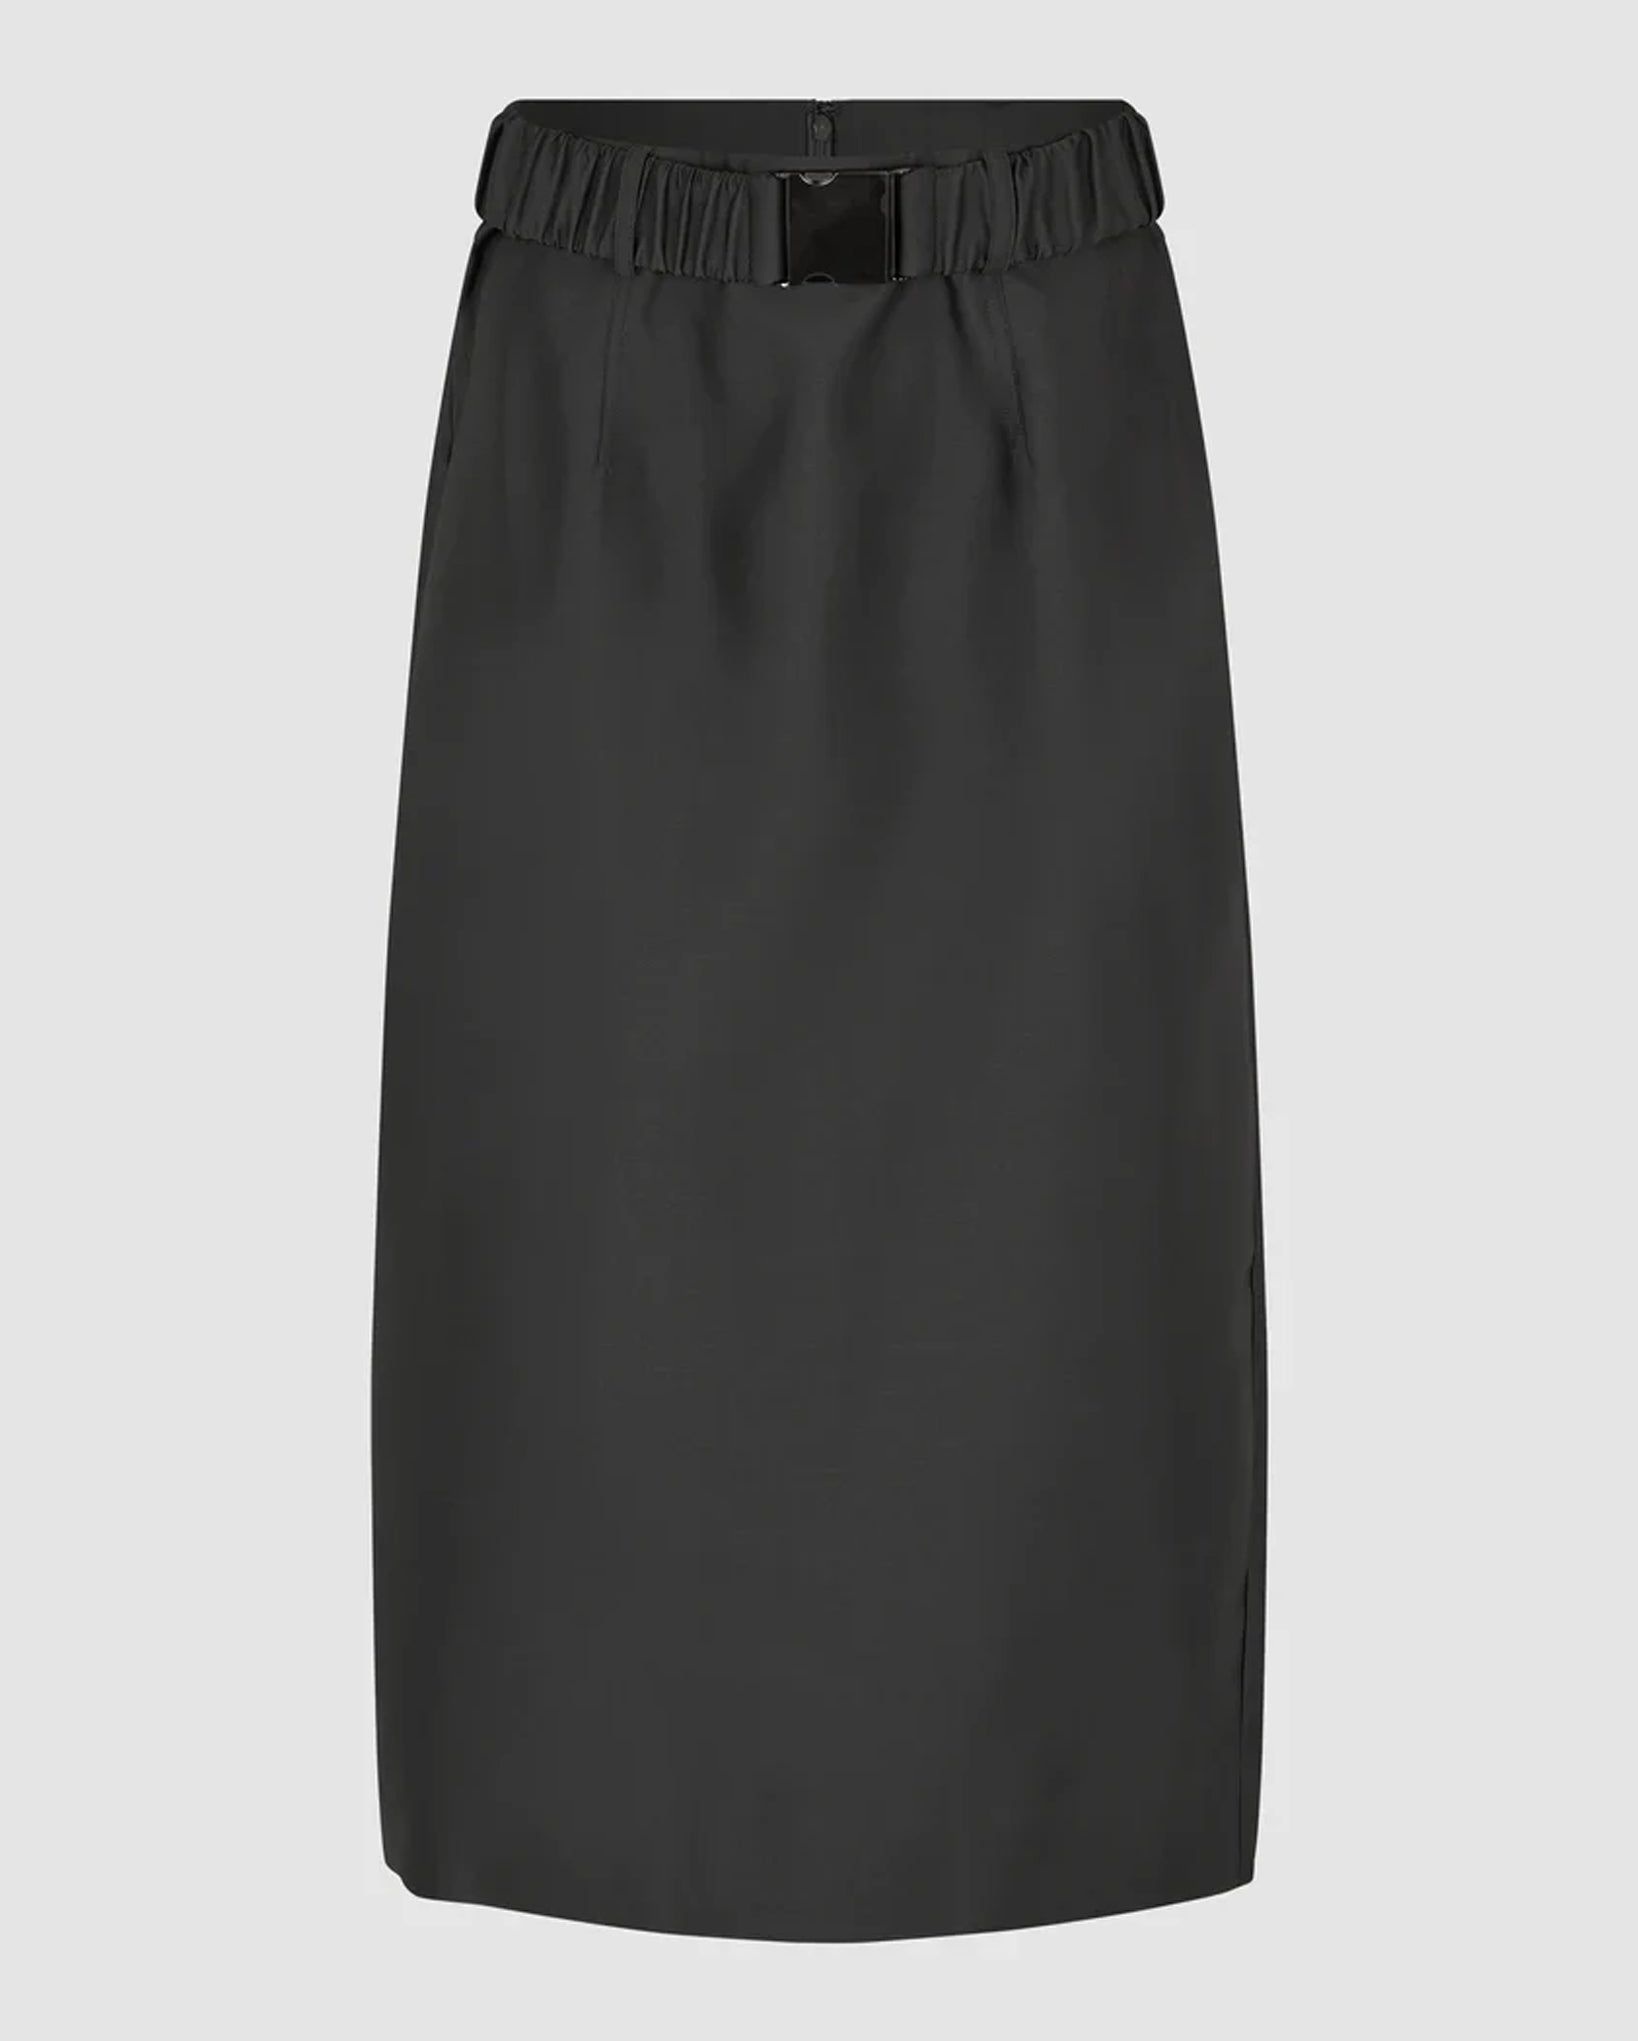 Elegance Skirt